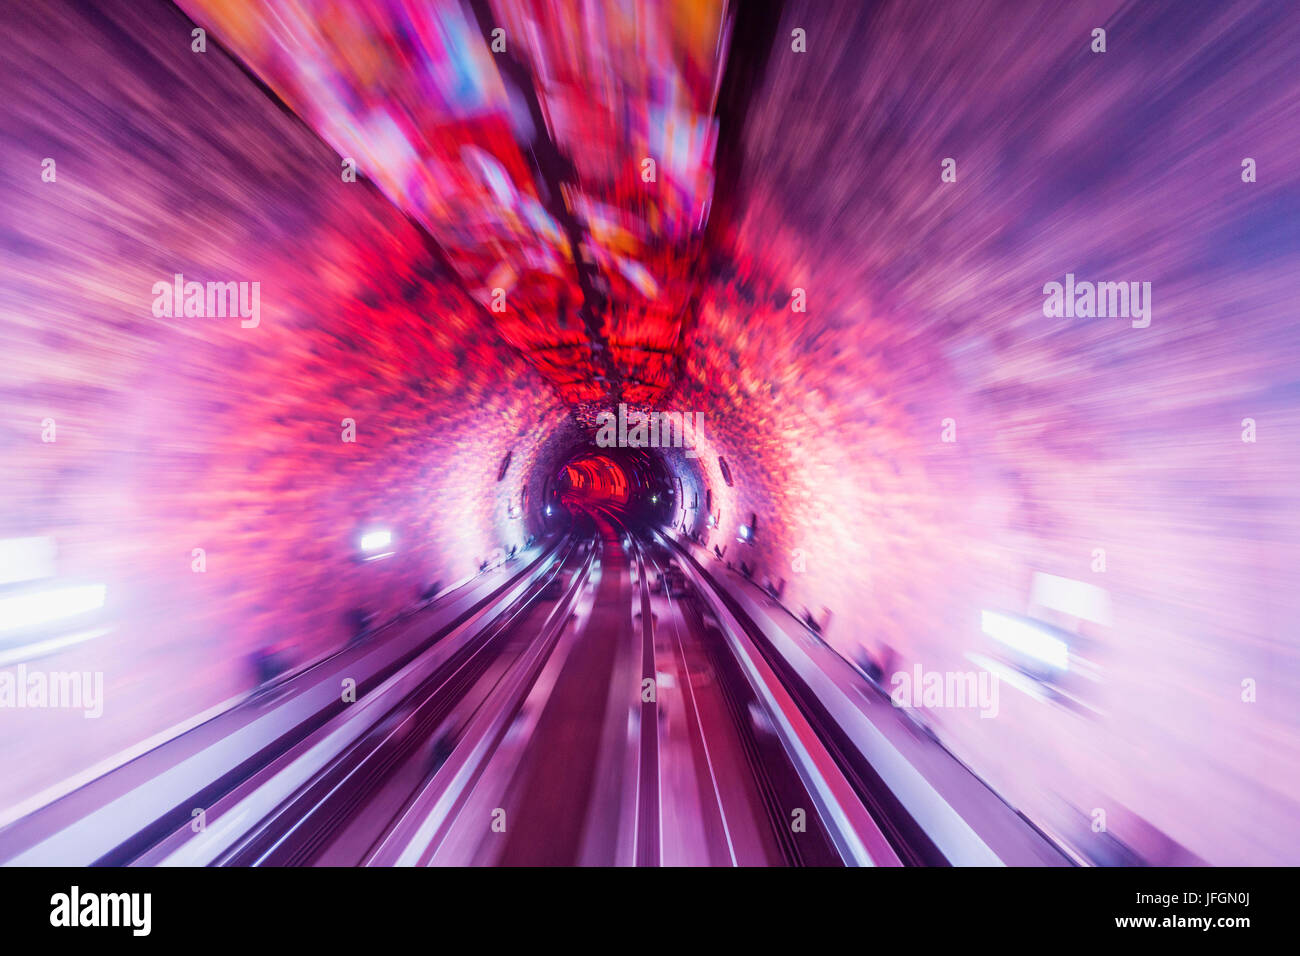 China, Shanghai, der Bund Sightseeing Tunnel-Licht-Show Stockfoto